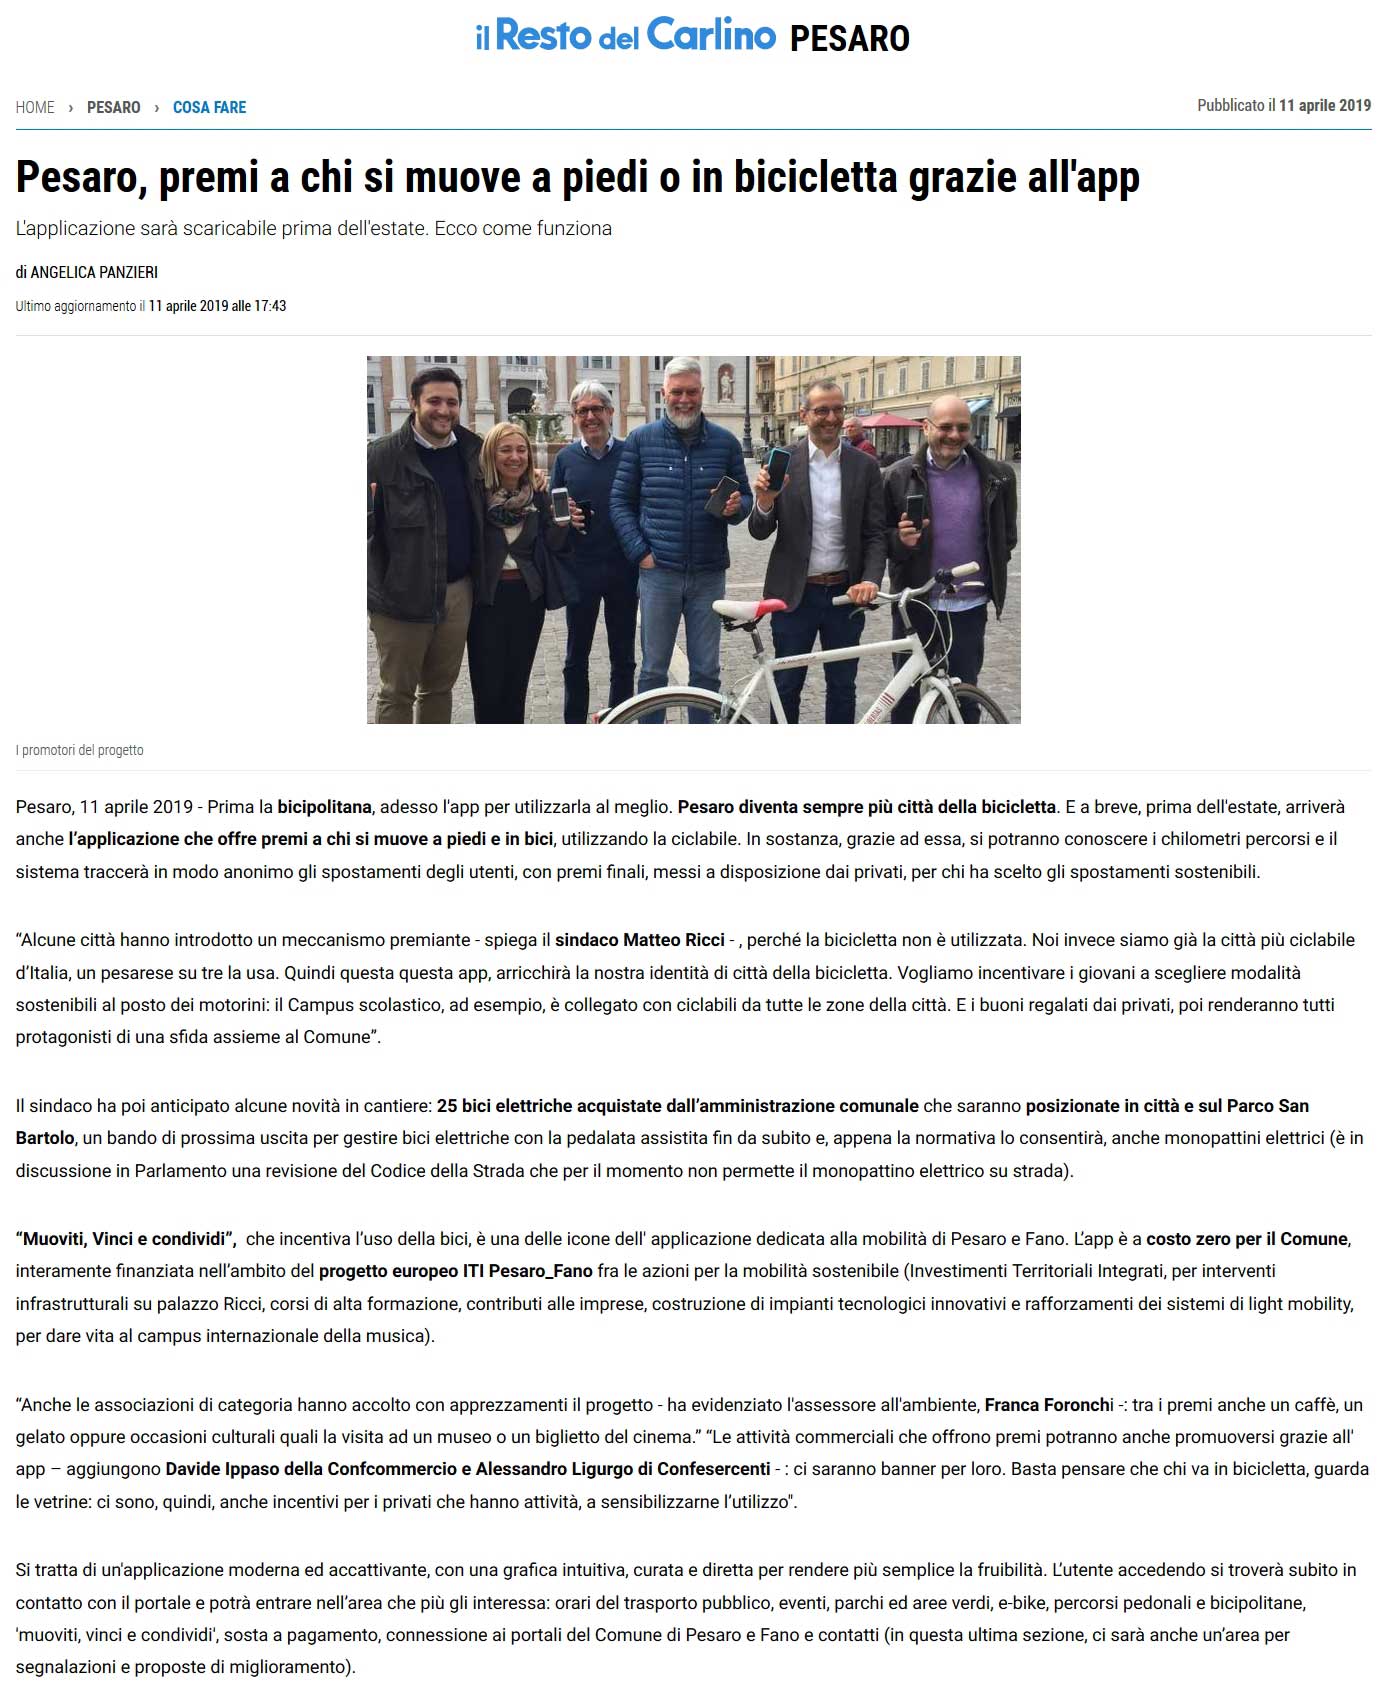 20190411-Resto-del-Carlino-11-Aprile-2019-Pesaro-App-Bicicletta.jpg